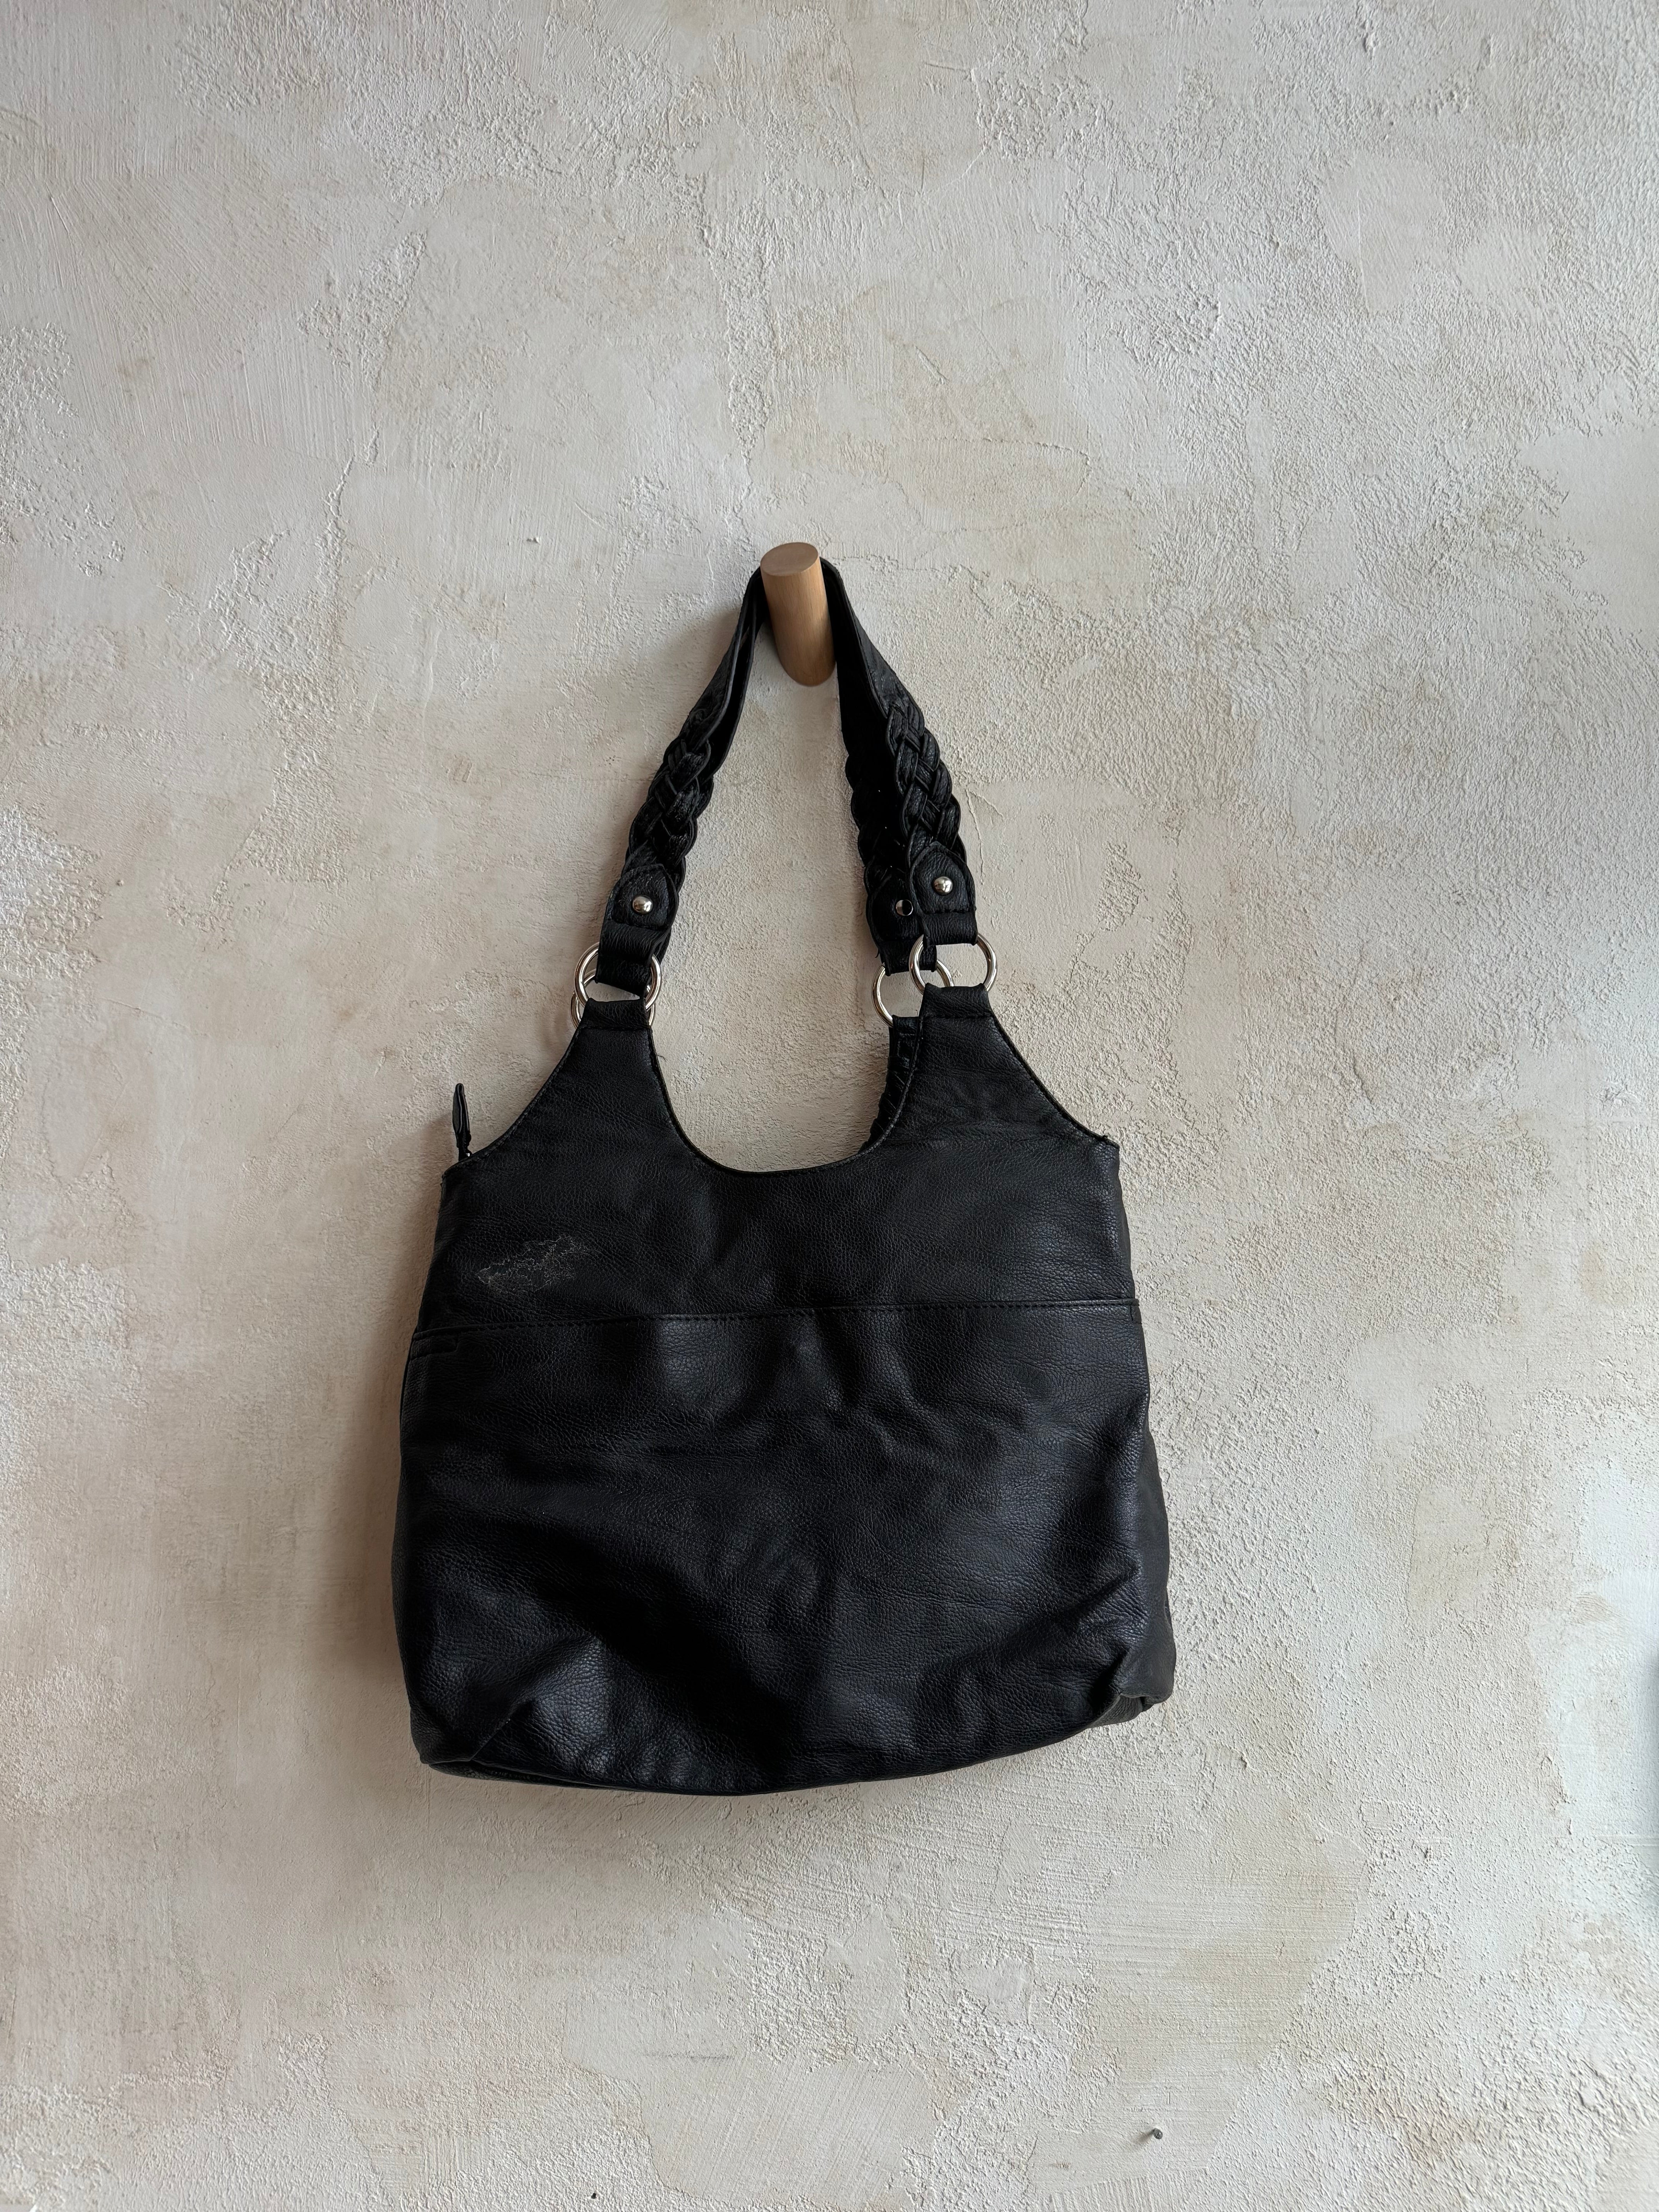 Braided Black Shoulder Bag